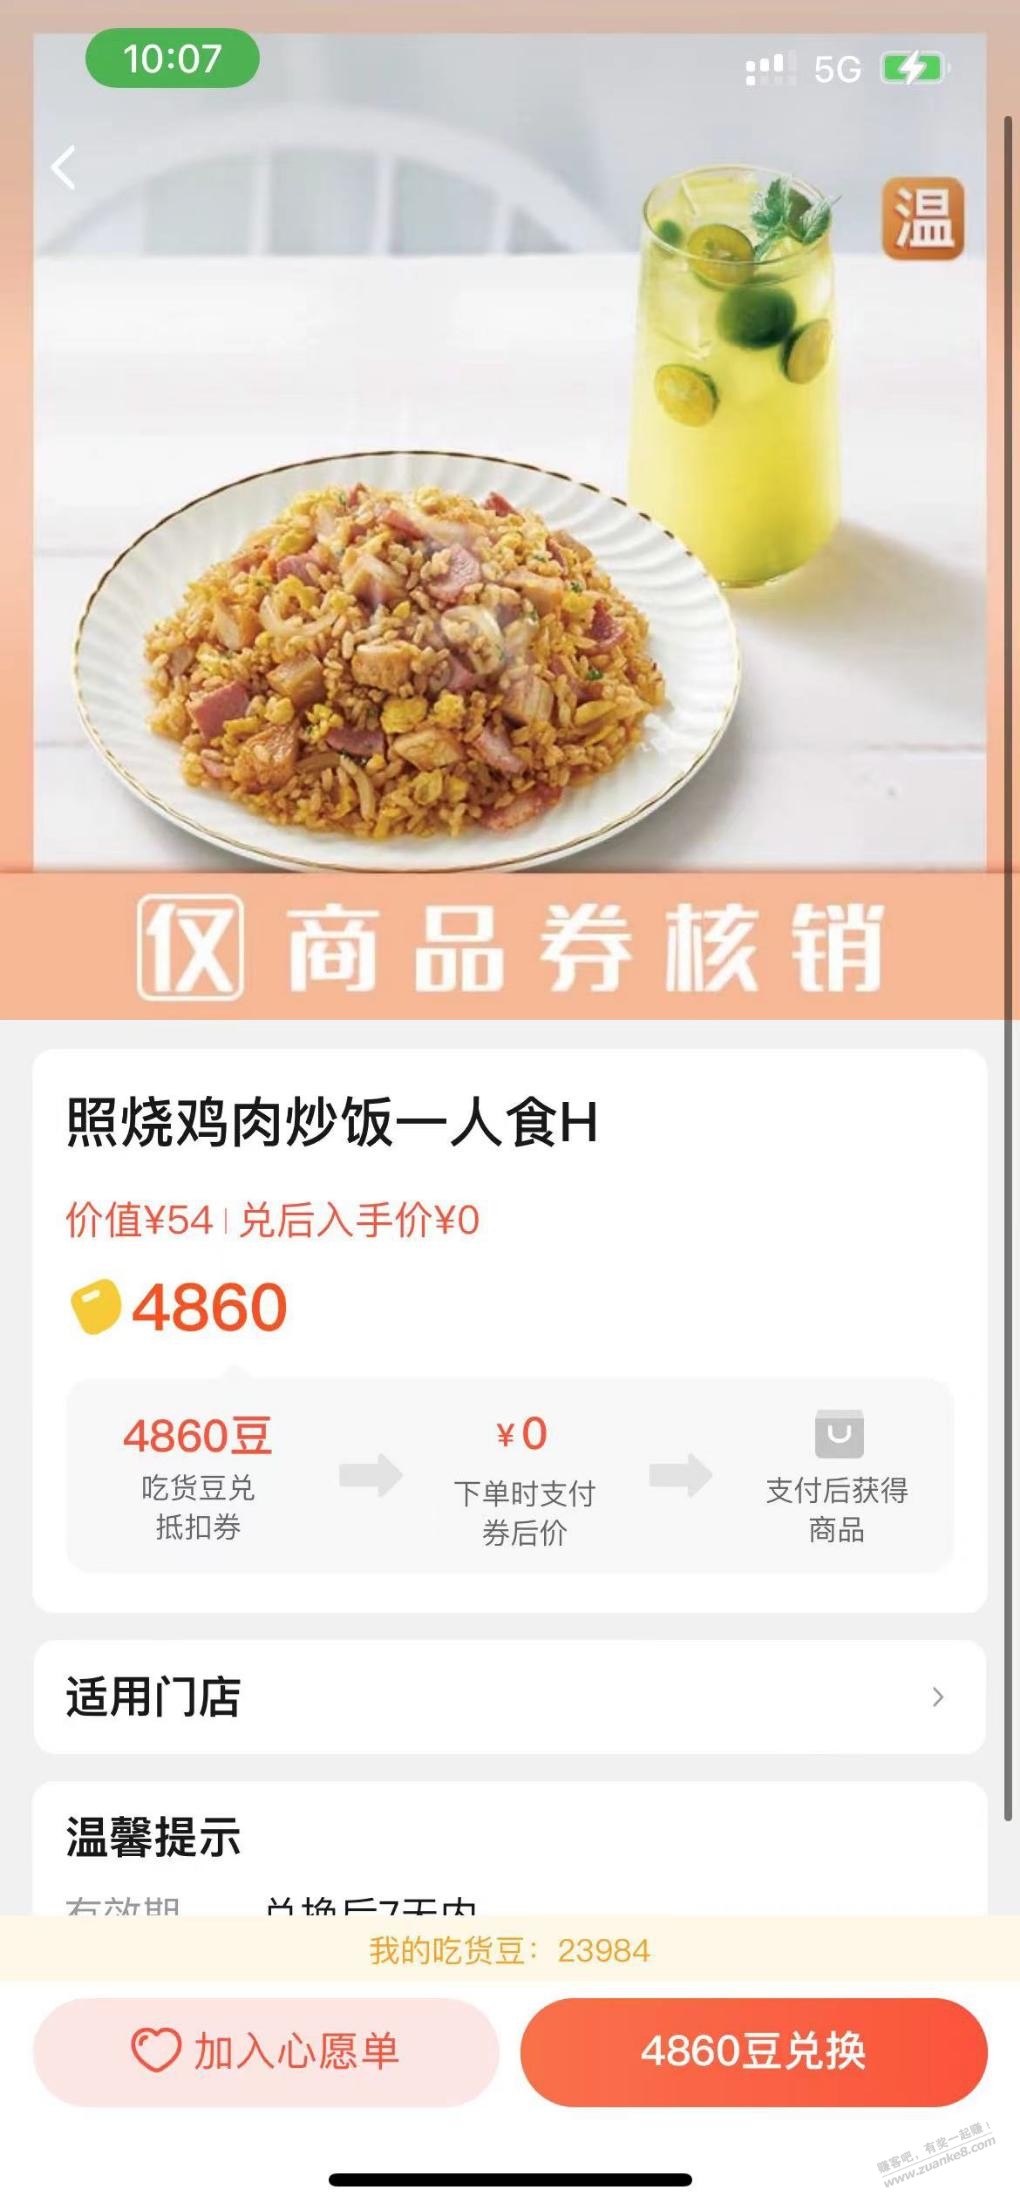 饿了么吃货豆咨询-惠小助(52huixz.com)